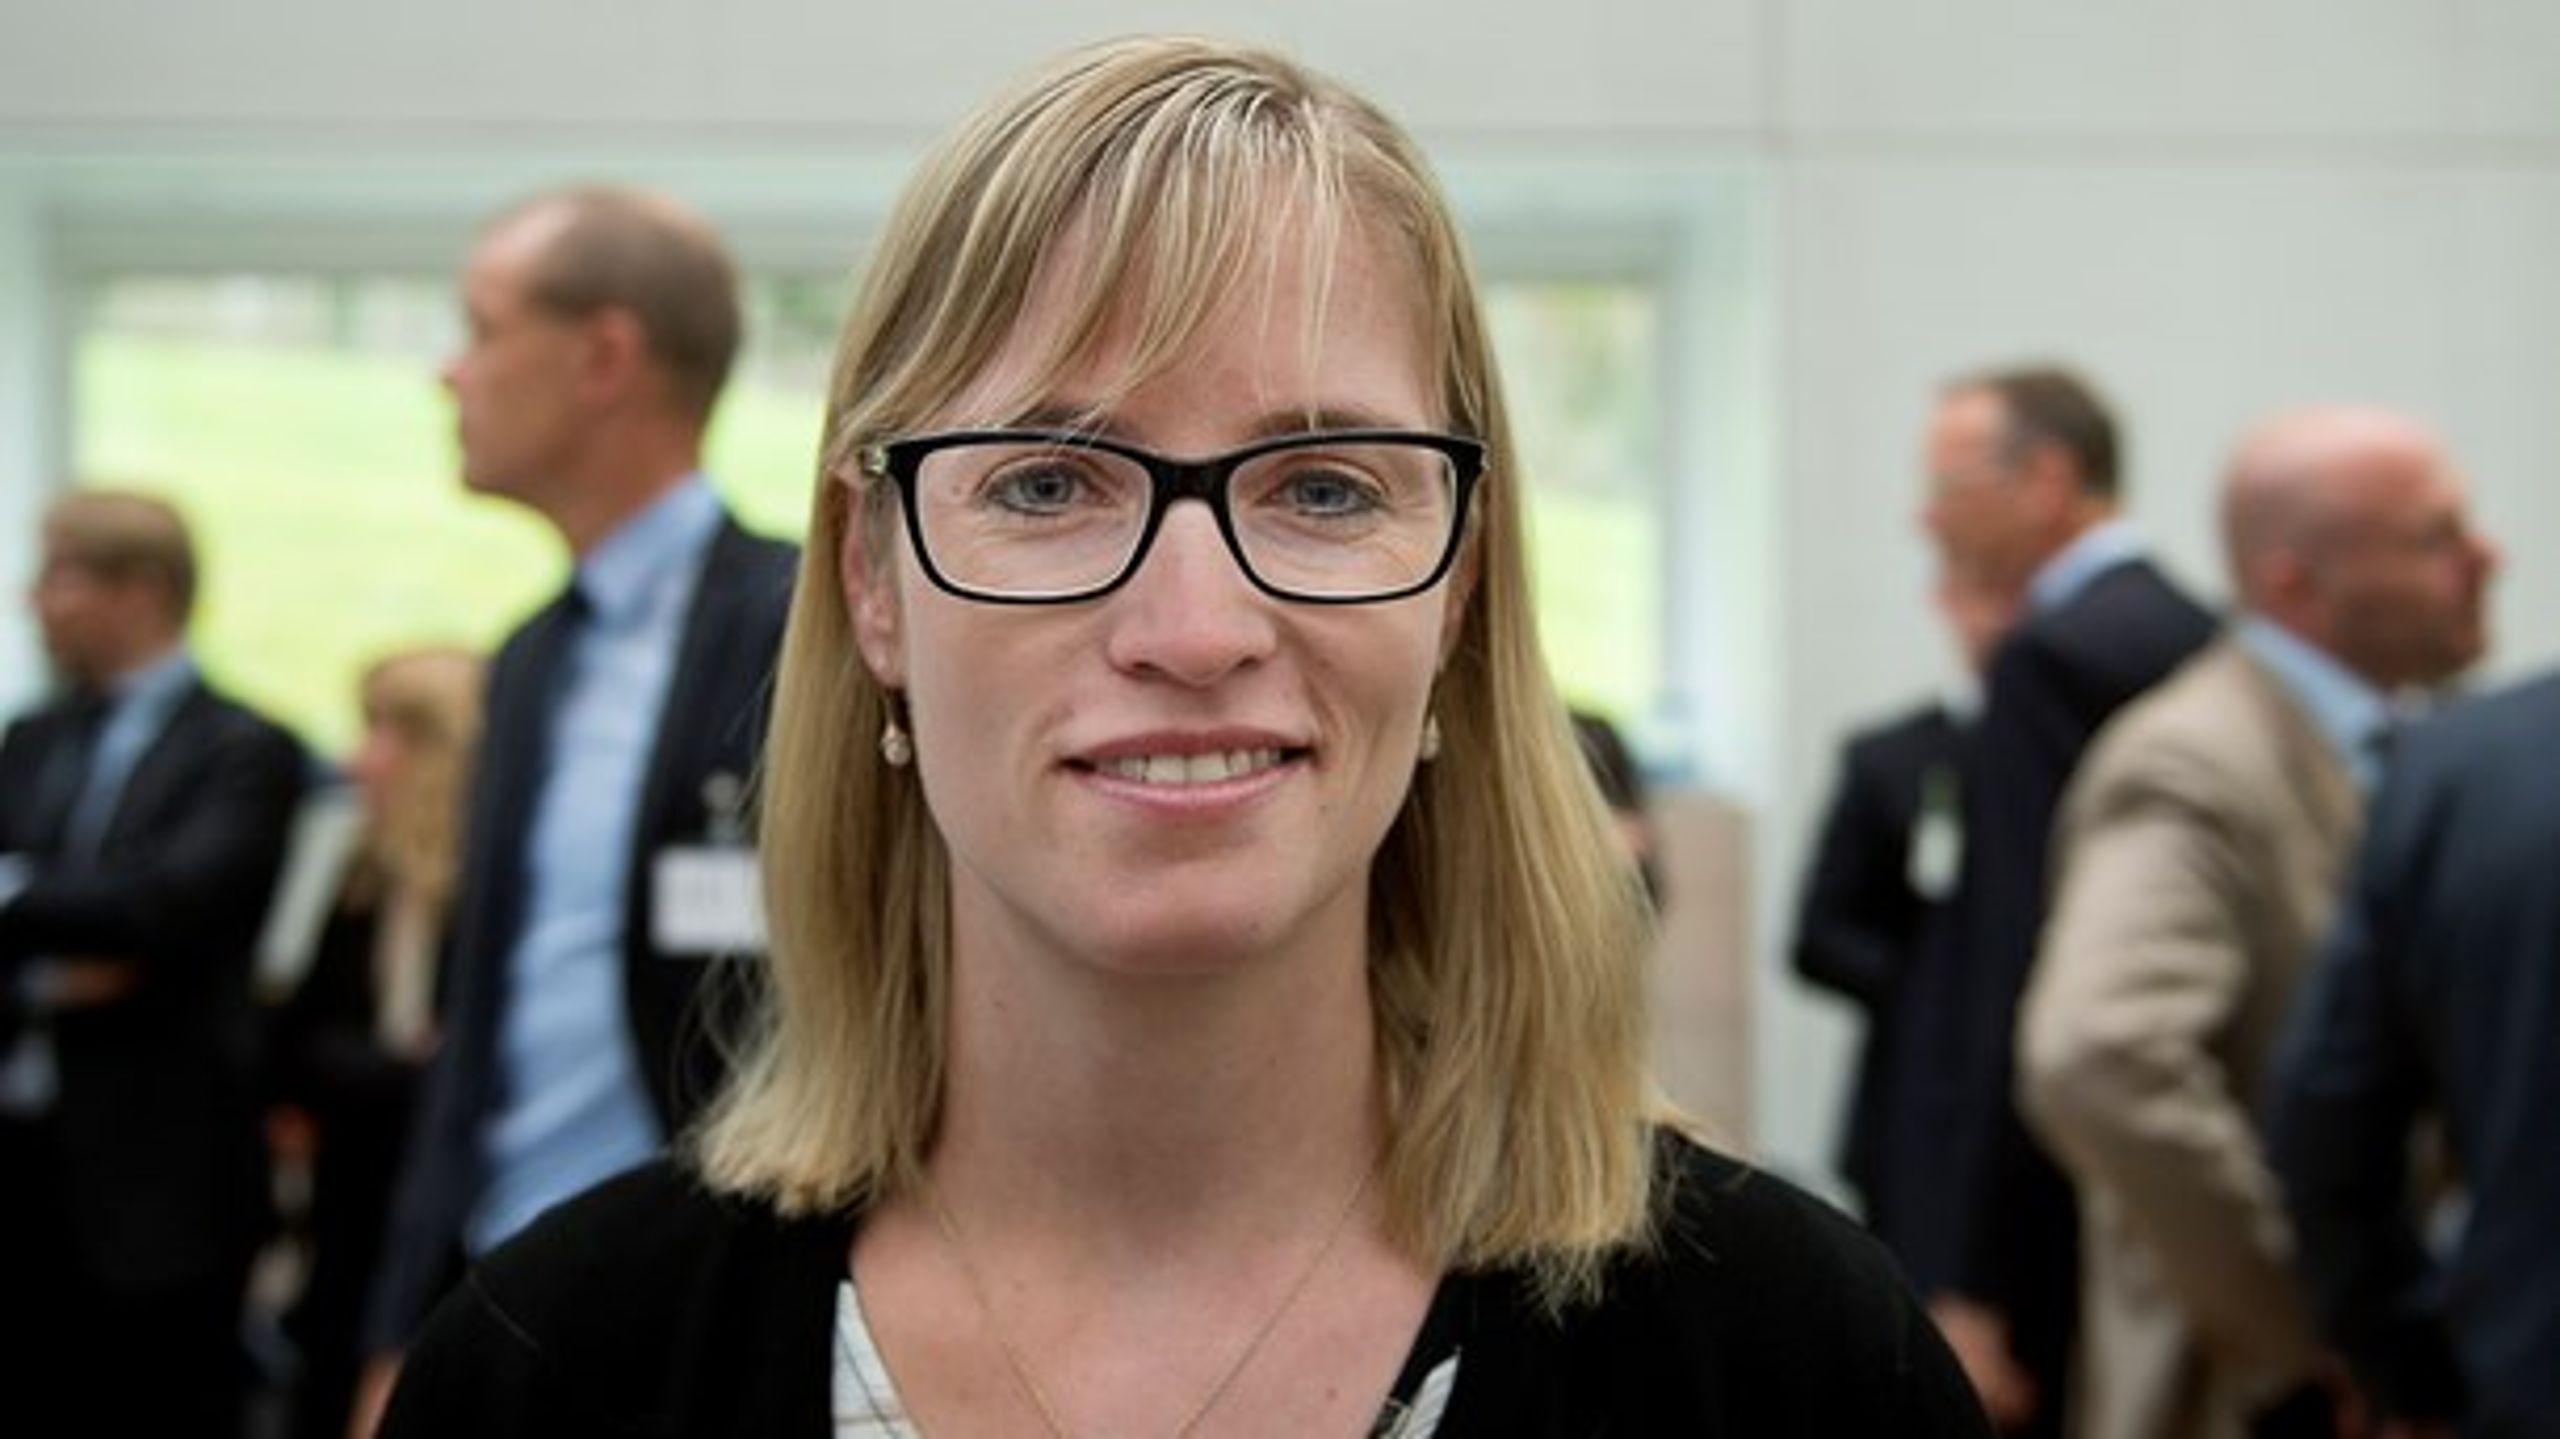 Den kommende formand for Danske Regioner Stephanie Lose (V) går en travl tid i møde.